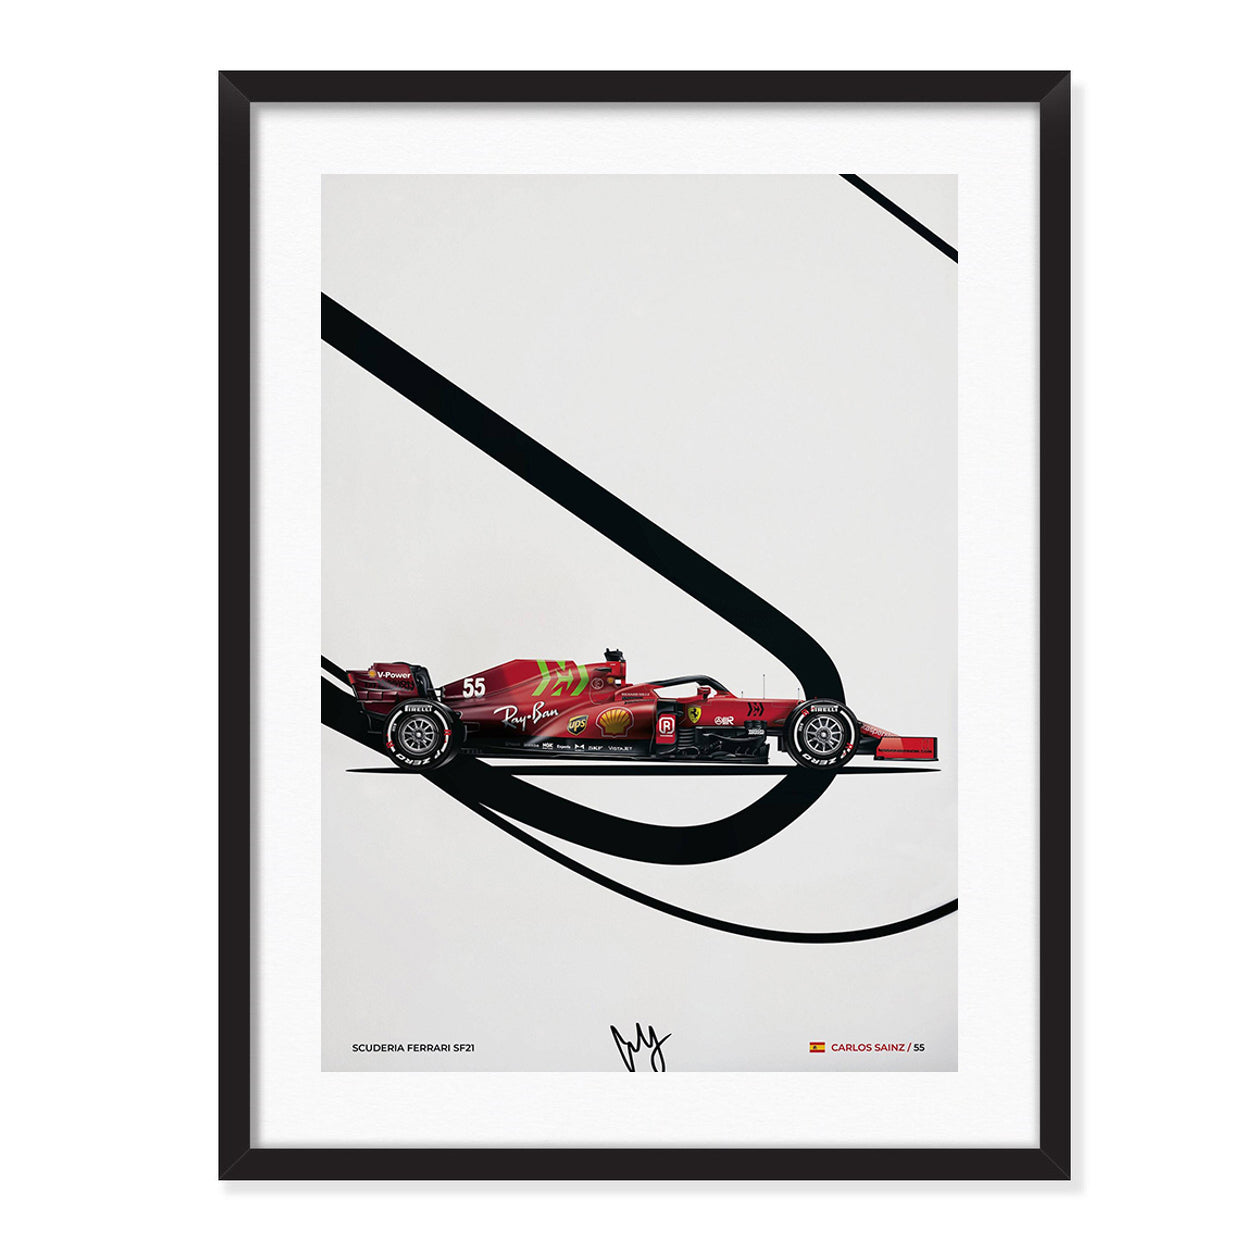 Scuderia Ferrari SF-23 Team - Poster – GP Unboxed